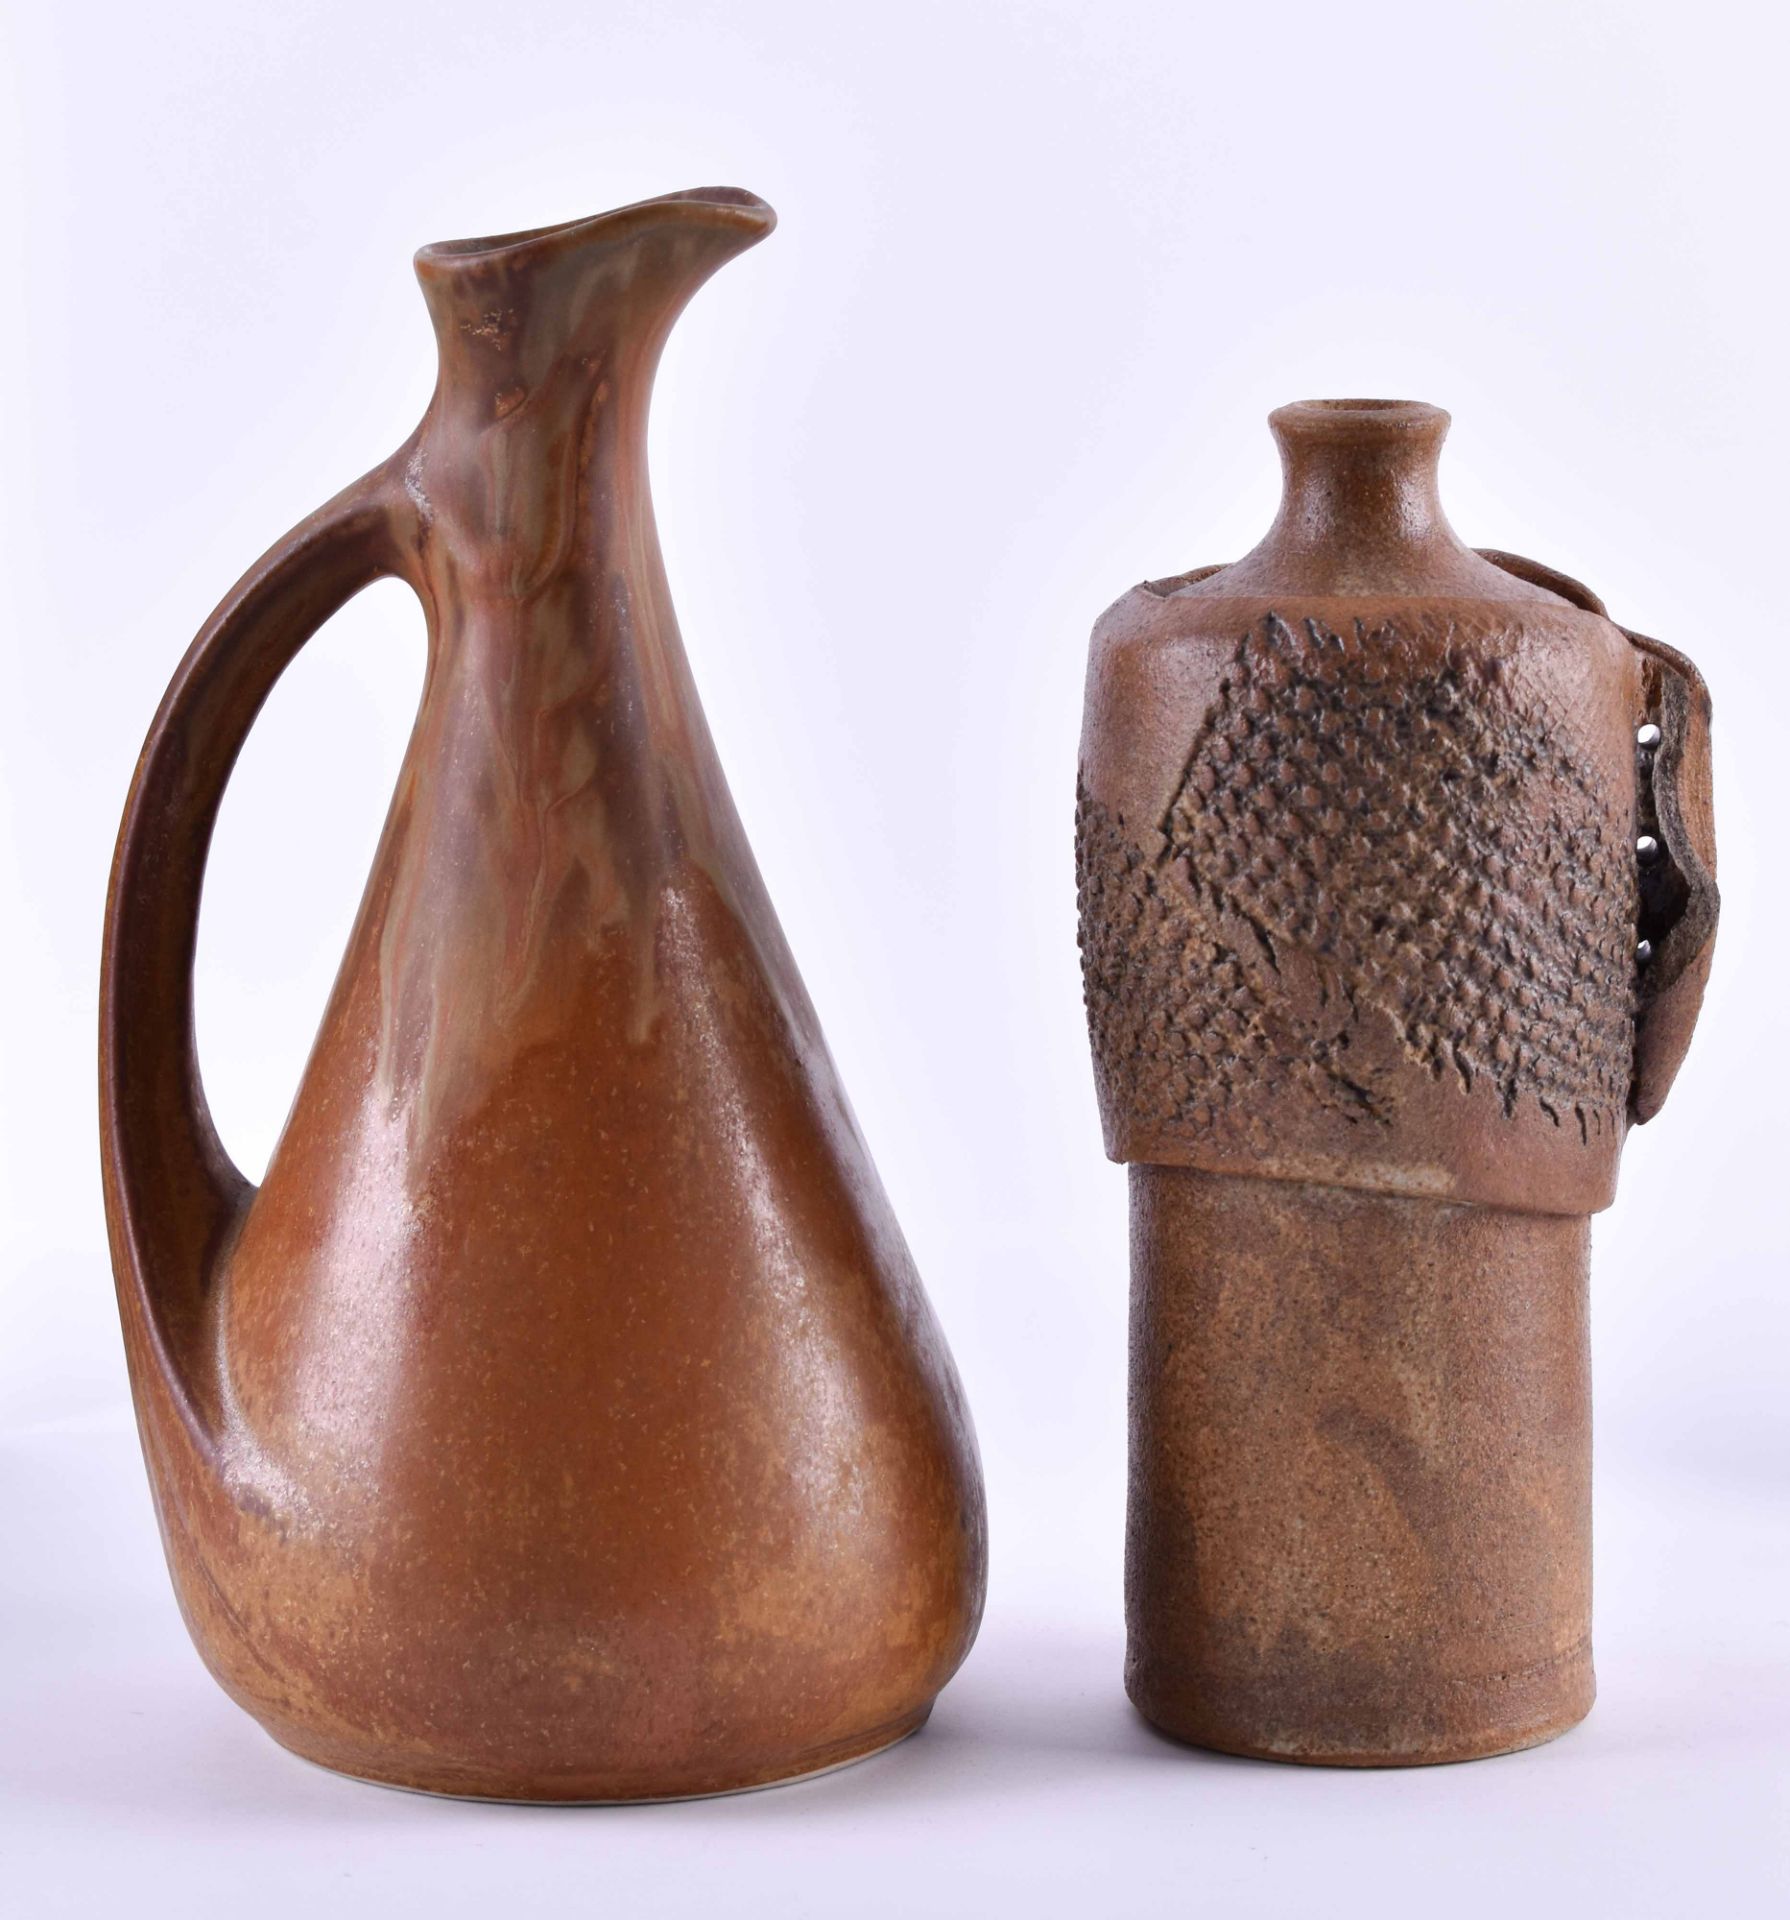 2 stoneware vasesin very good condition, height: 20 cm and 22 cm2 Steinzeug Vasensehr gut